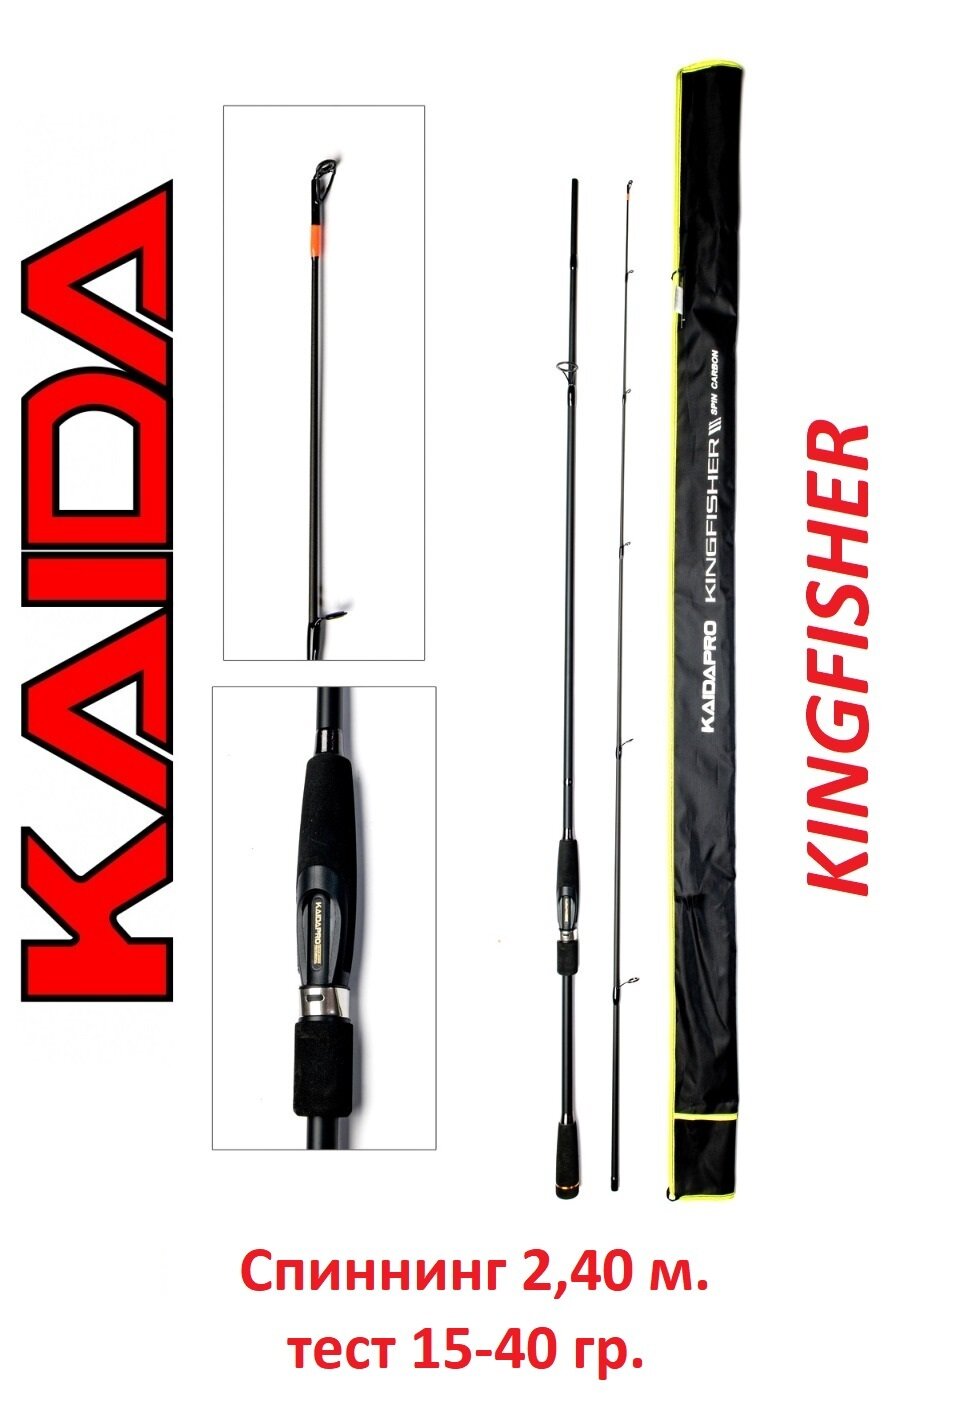 Спиннинг Kaida Kingfisher 2.4 м тест 15-40 гр